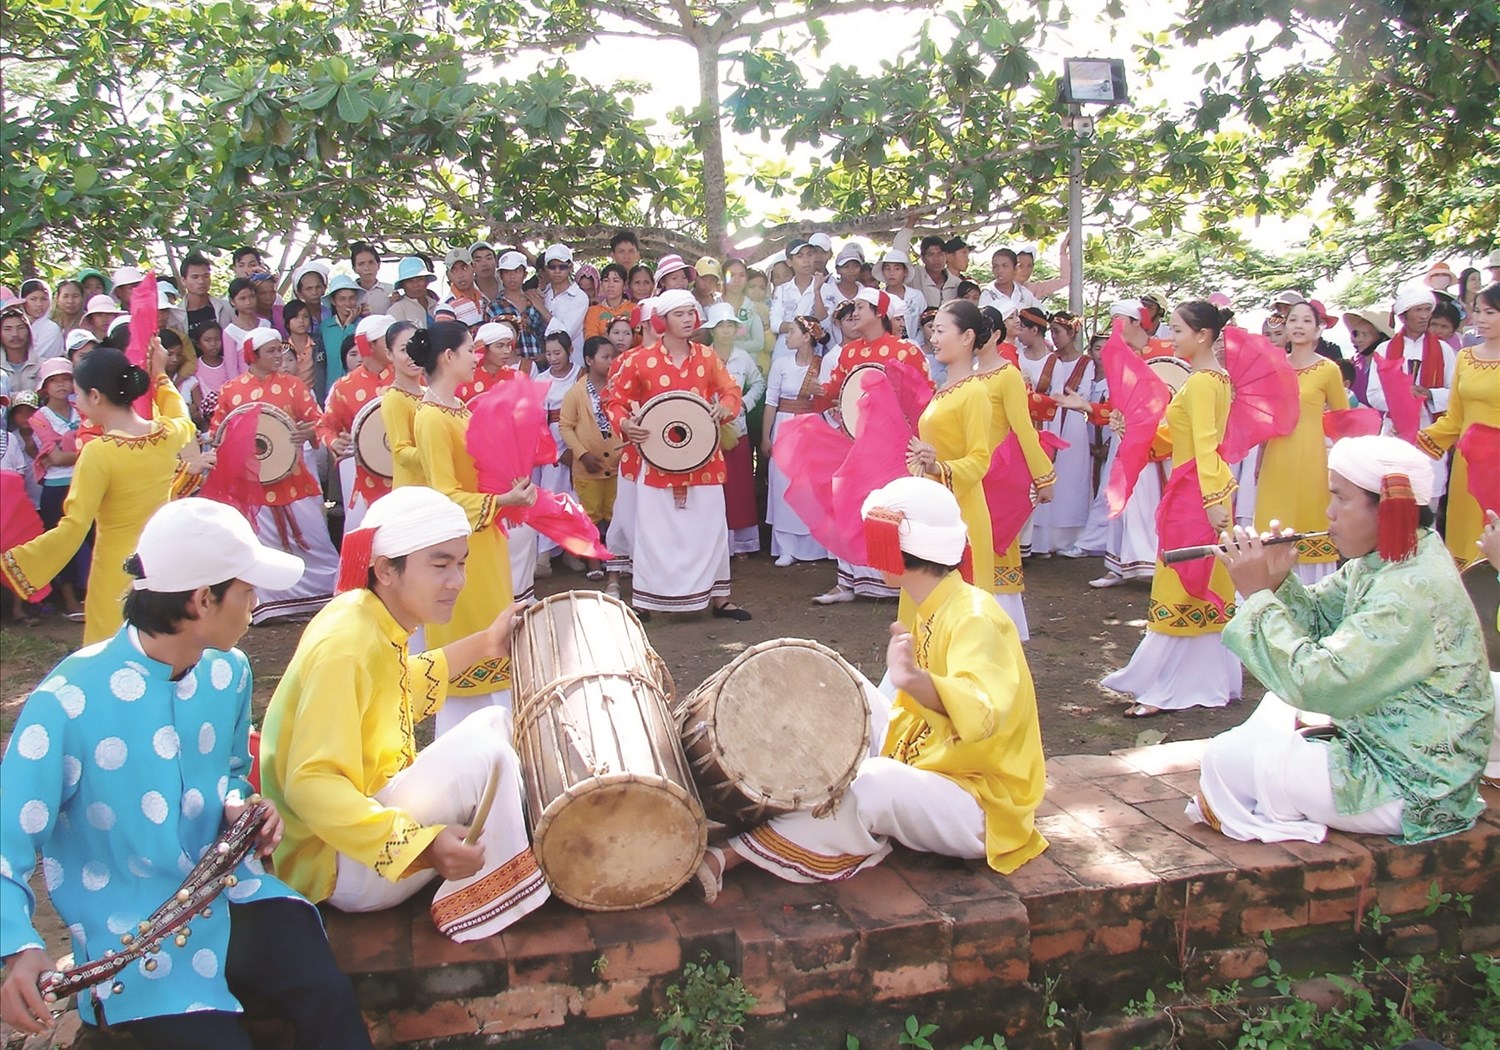 Bảo tồn và phát huy giá trị nhạc cụ truyền thống dân tộc Chăm